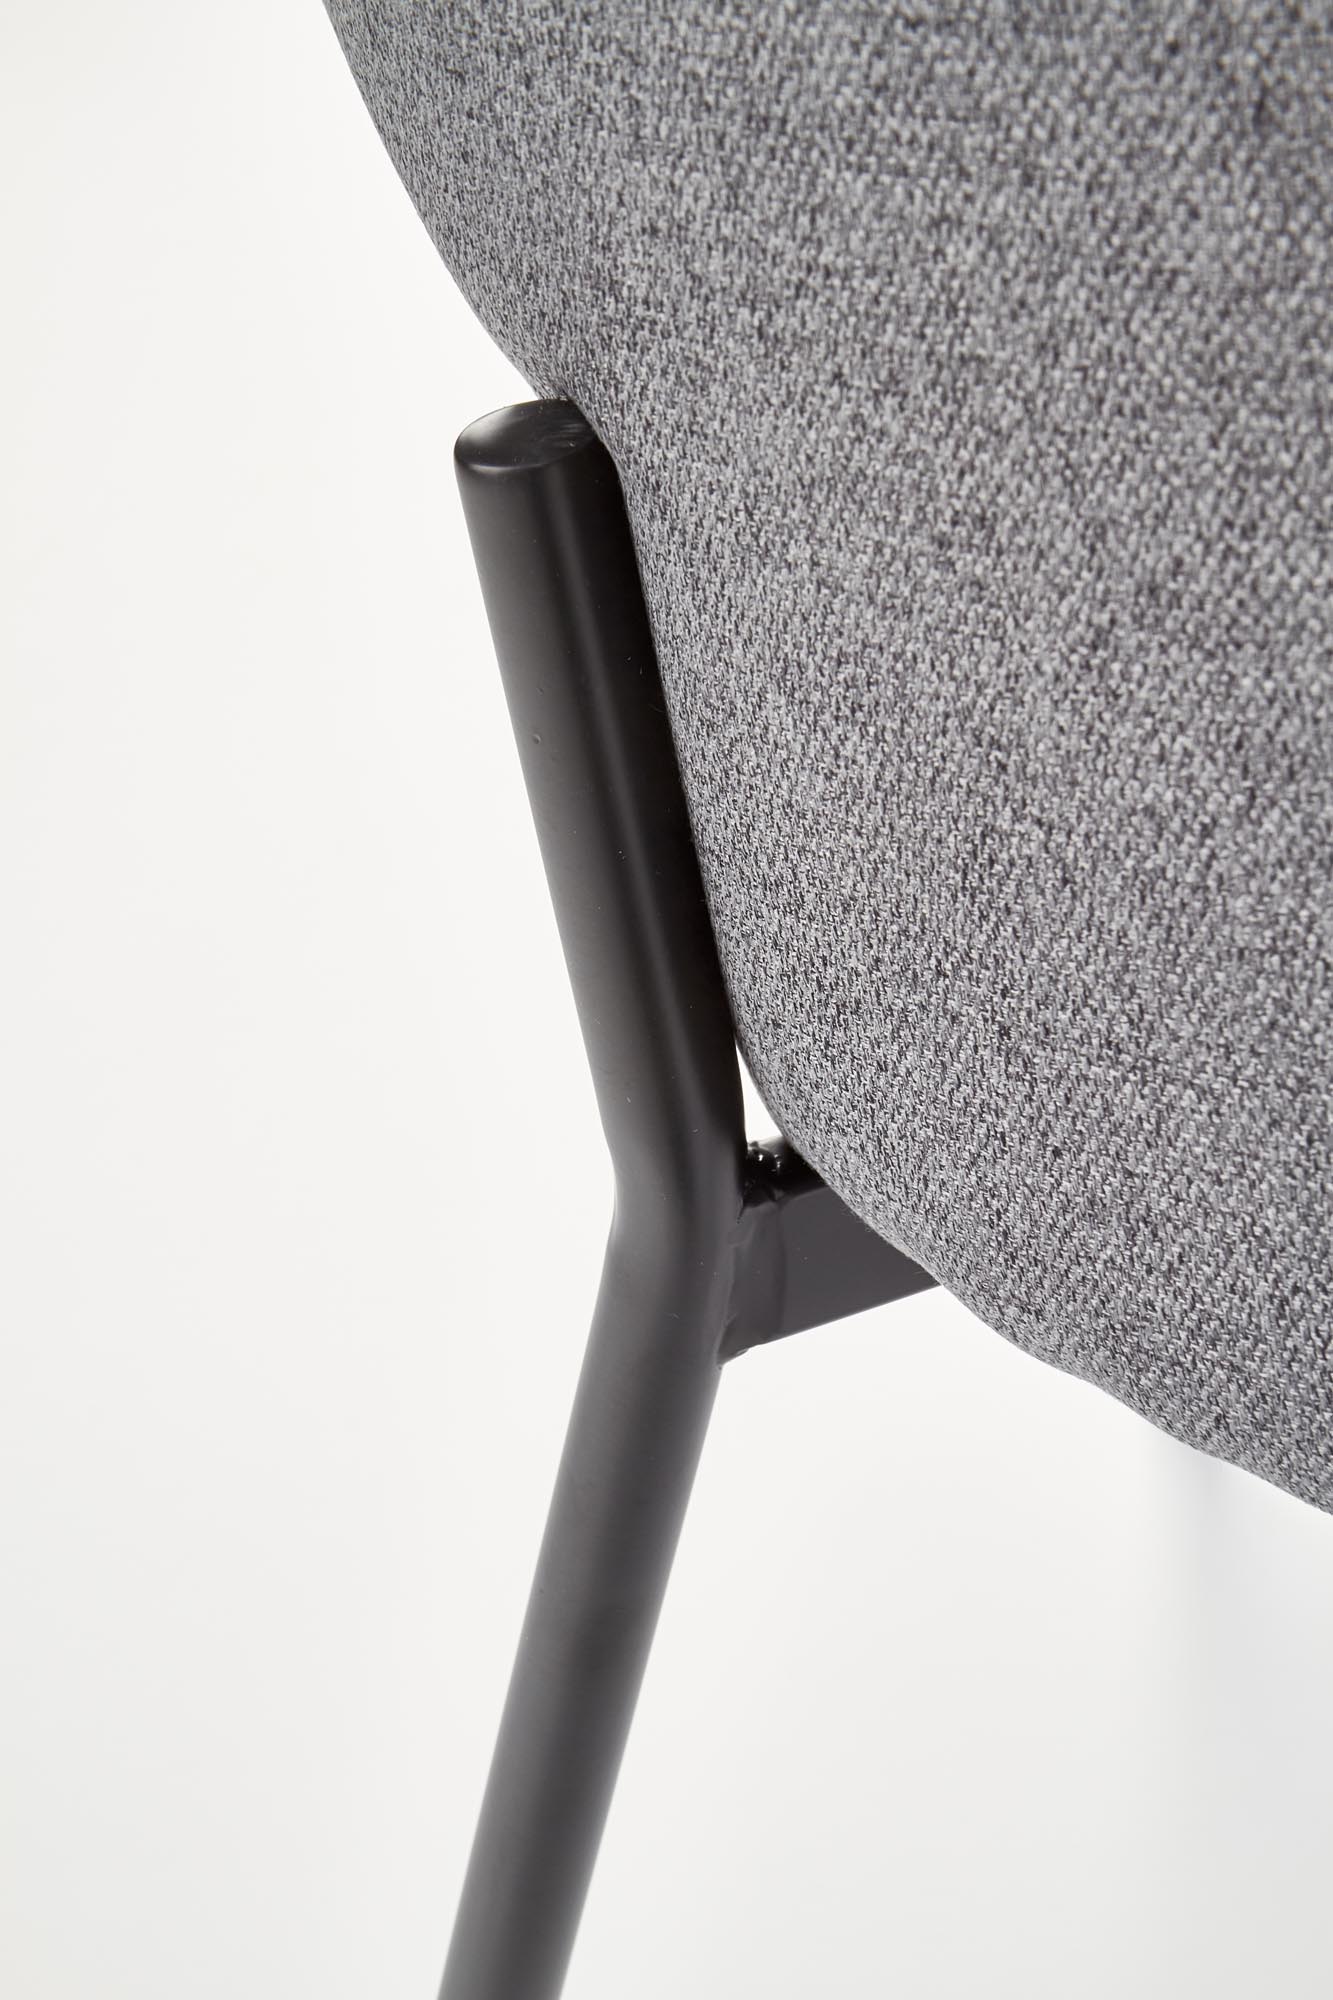 Krzesło tapicerowane K373 na metalowych nogach - popielaty krzesło k373 - popielaty